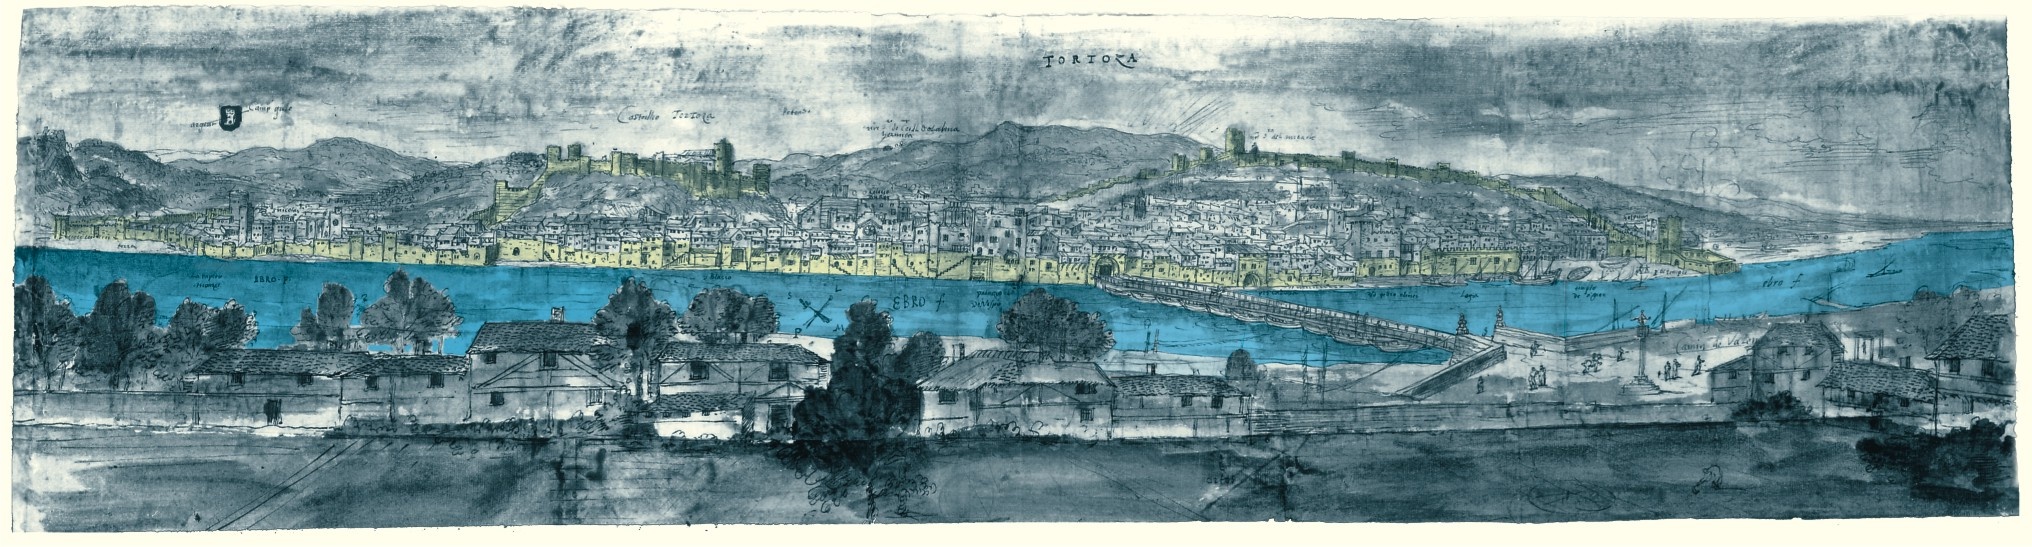 Vista de Tortosa en el siglo XVI por Anton van den Wyngaerde